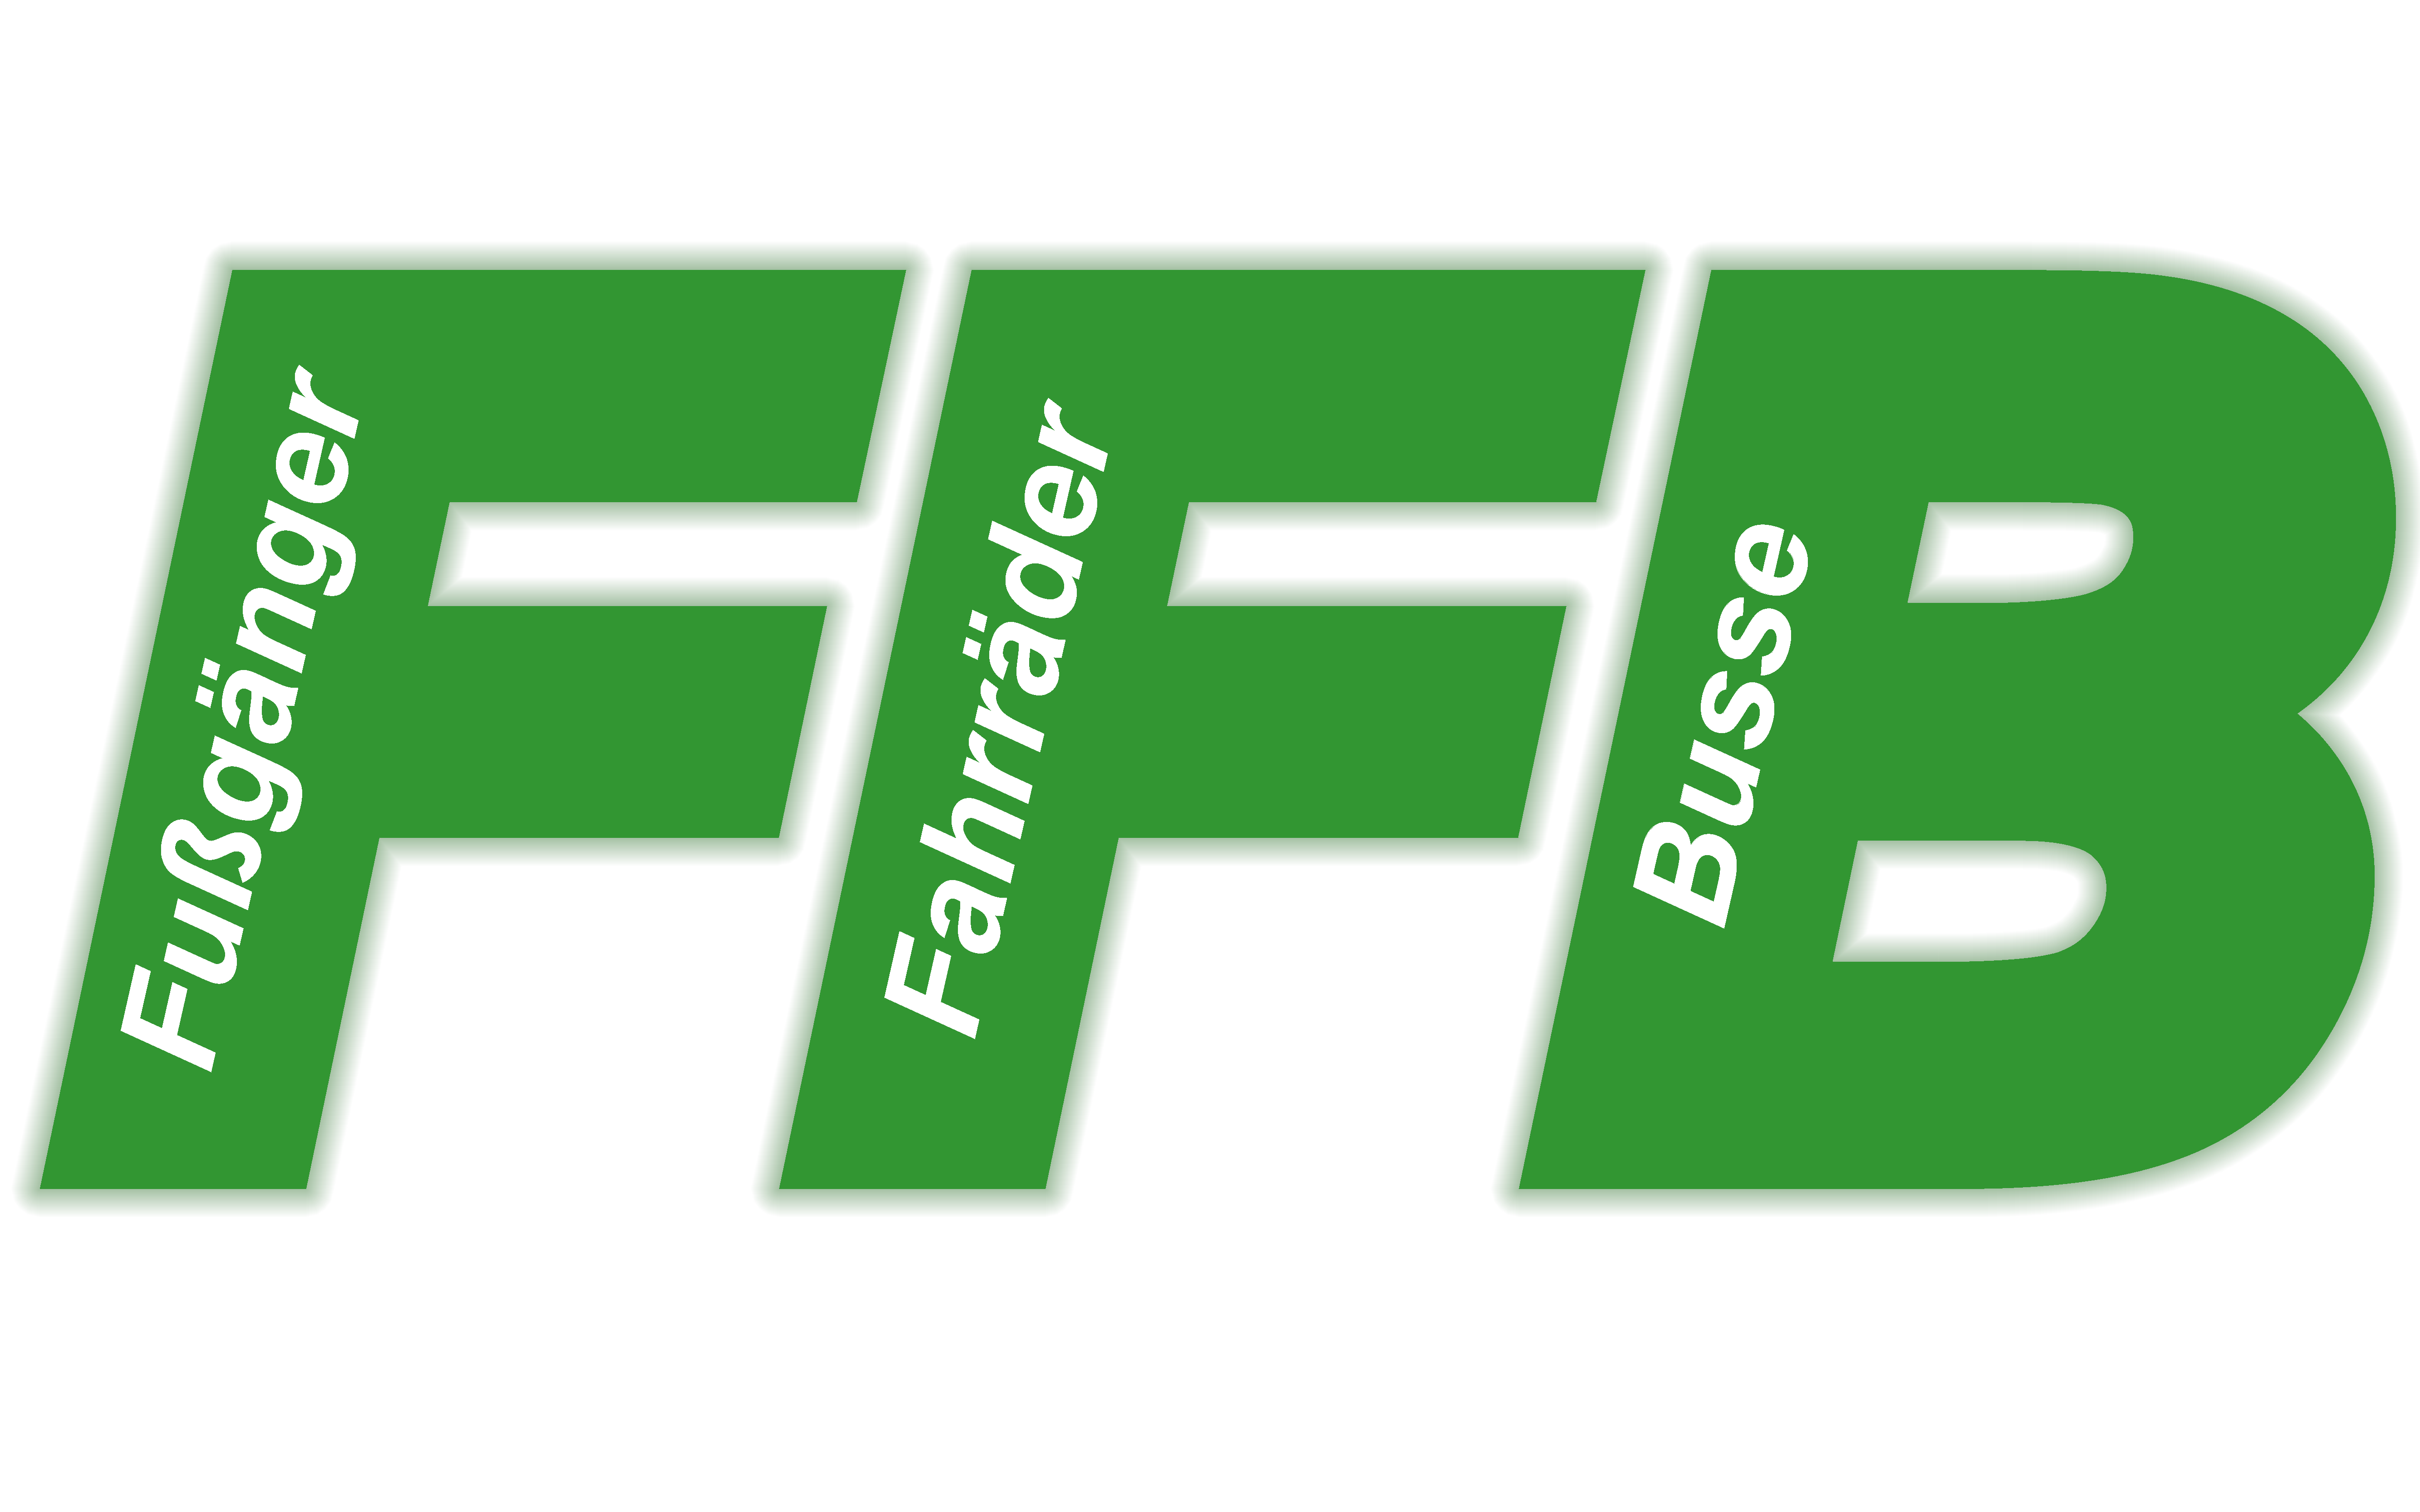 VF Logo